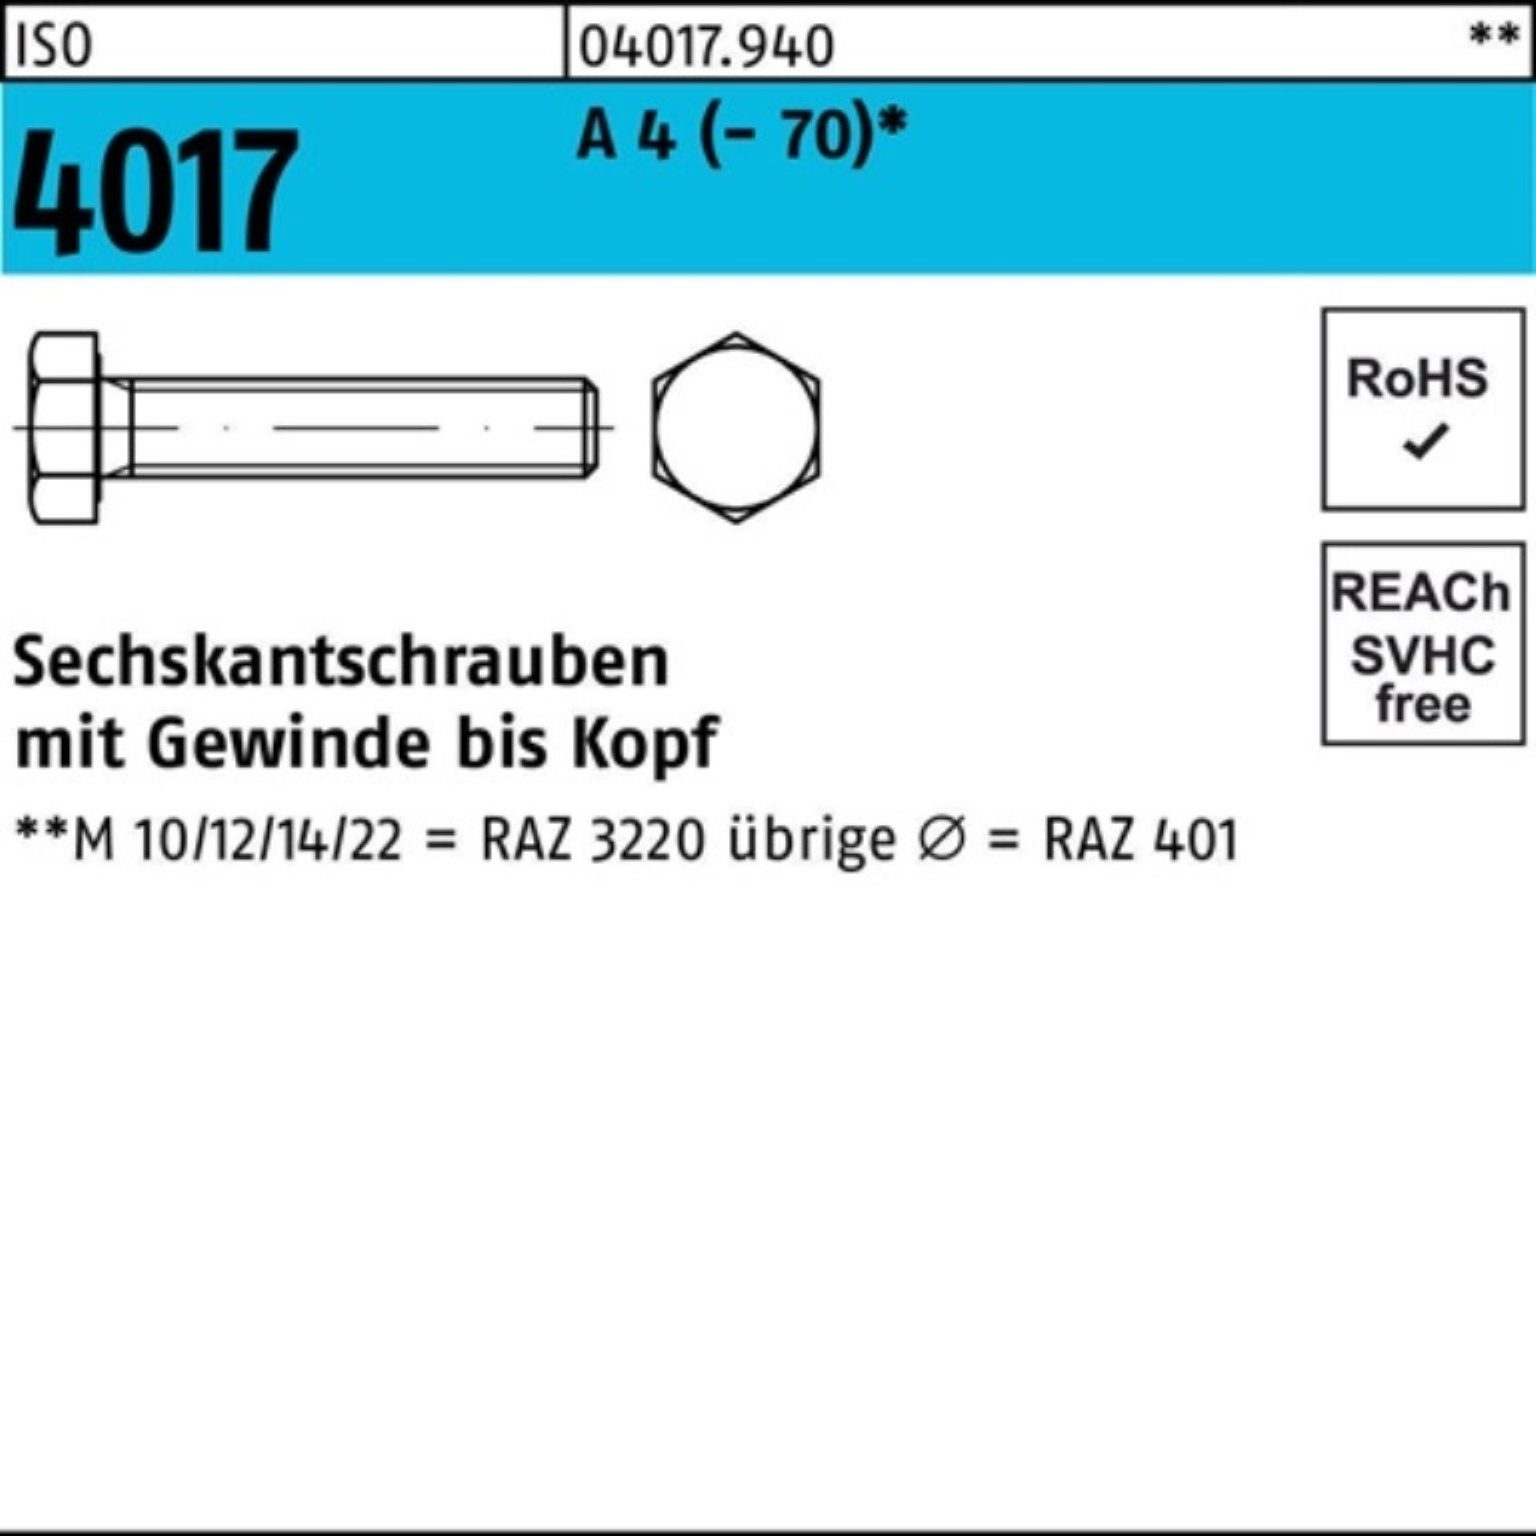 Bufab Sechskantschraube 100er Pack Sechskantschraube ISO 4017 VG M18x 35 A 4 (70) 1 Stück I